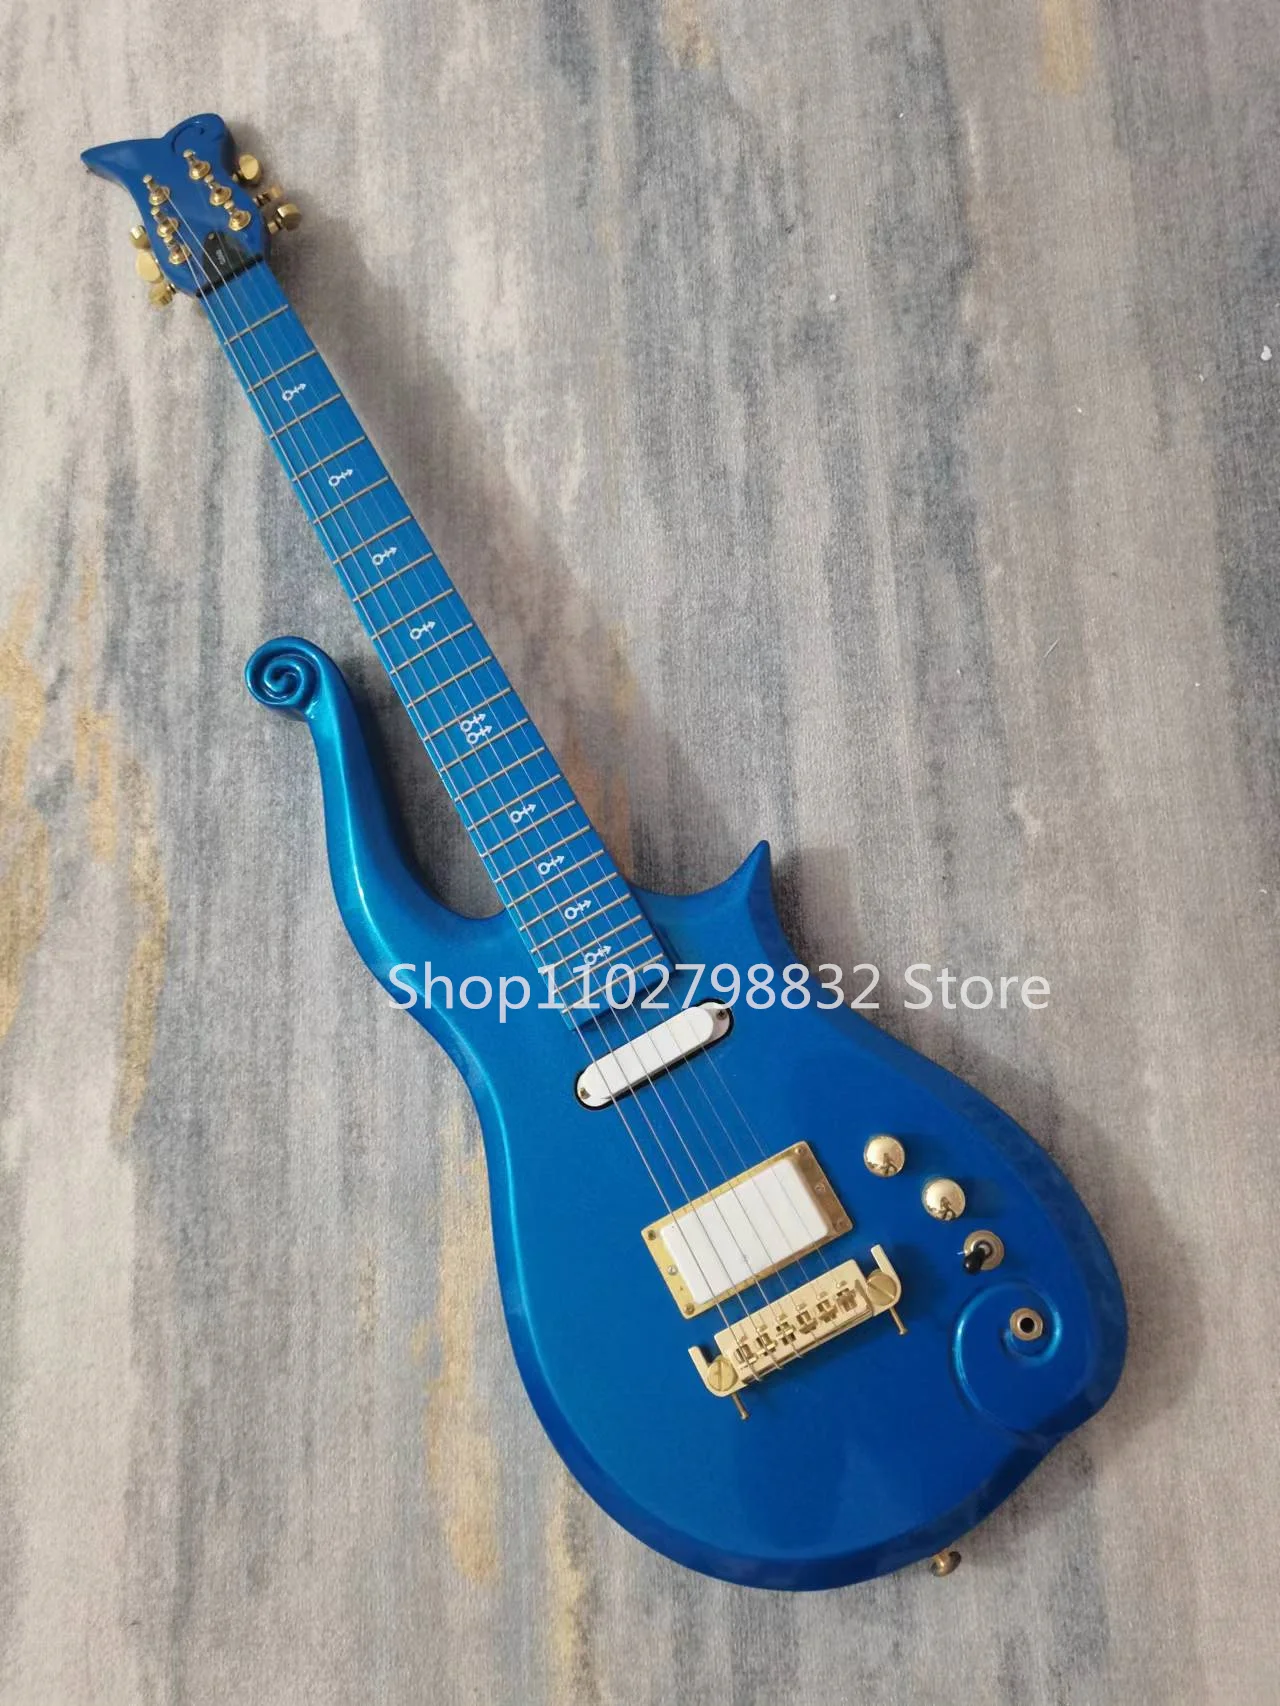 Pequeno Príncipe Guitarra Elétrica, Pintura Azul, Invertido Ponte, Ouro, Acessórios, 6 Cordas, Frete Grátis